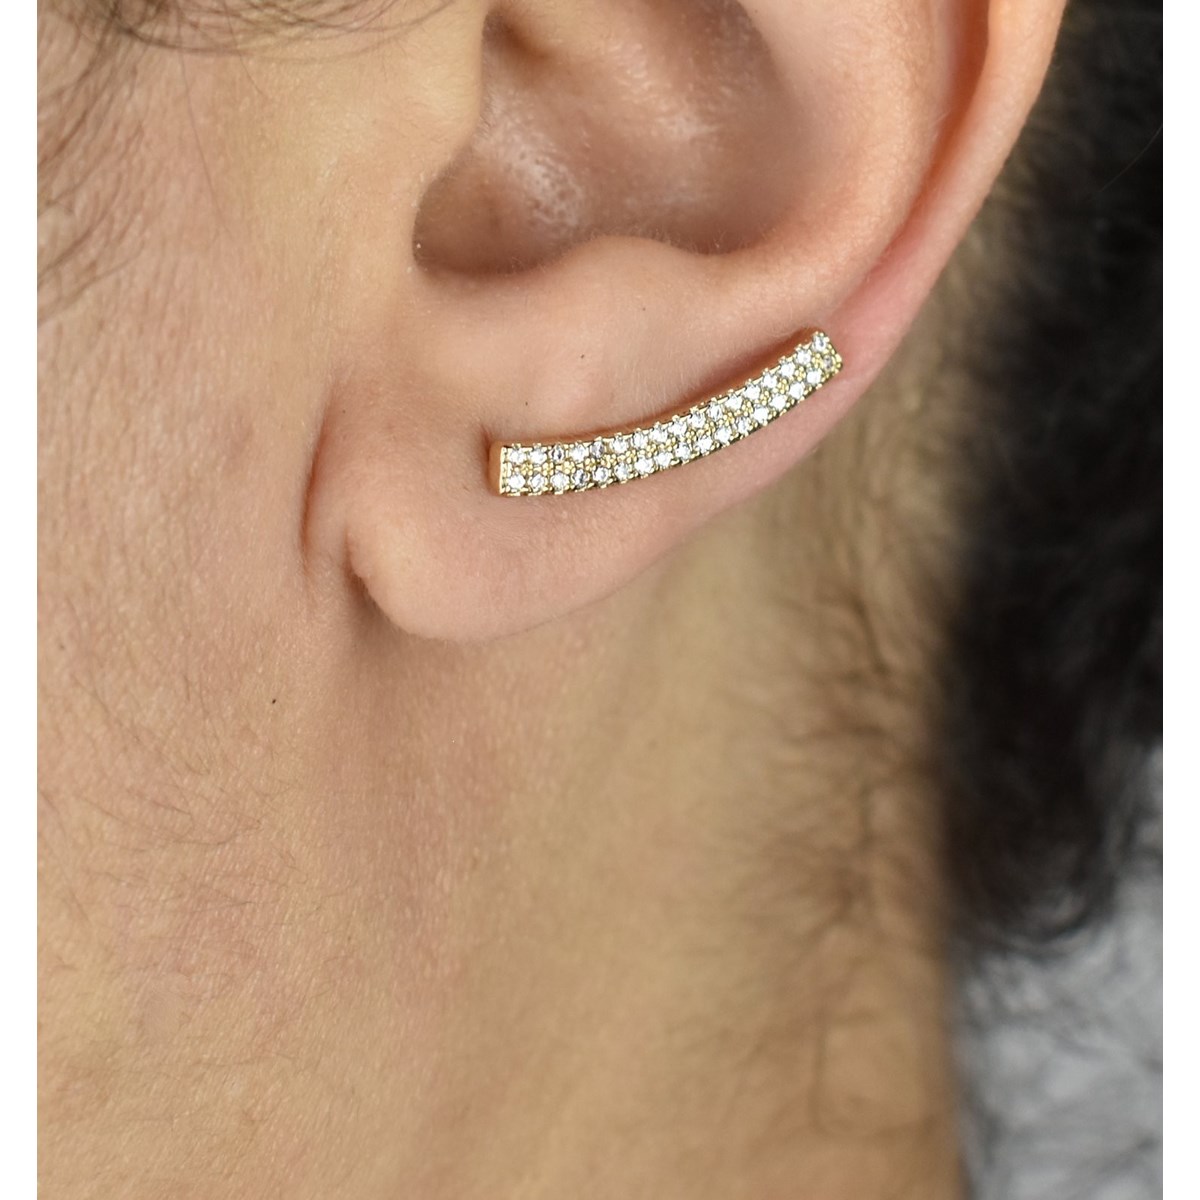 Boucles d'oreilles grimpantes barre 2 rangs contour de lobe serti d'oxydes de zirconium Plaqué OR 750 3 microns - vue 3